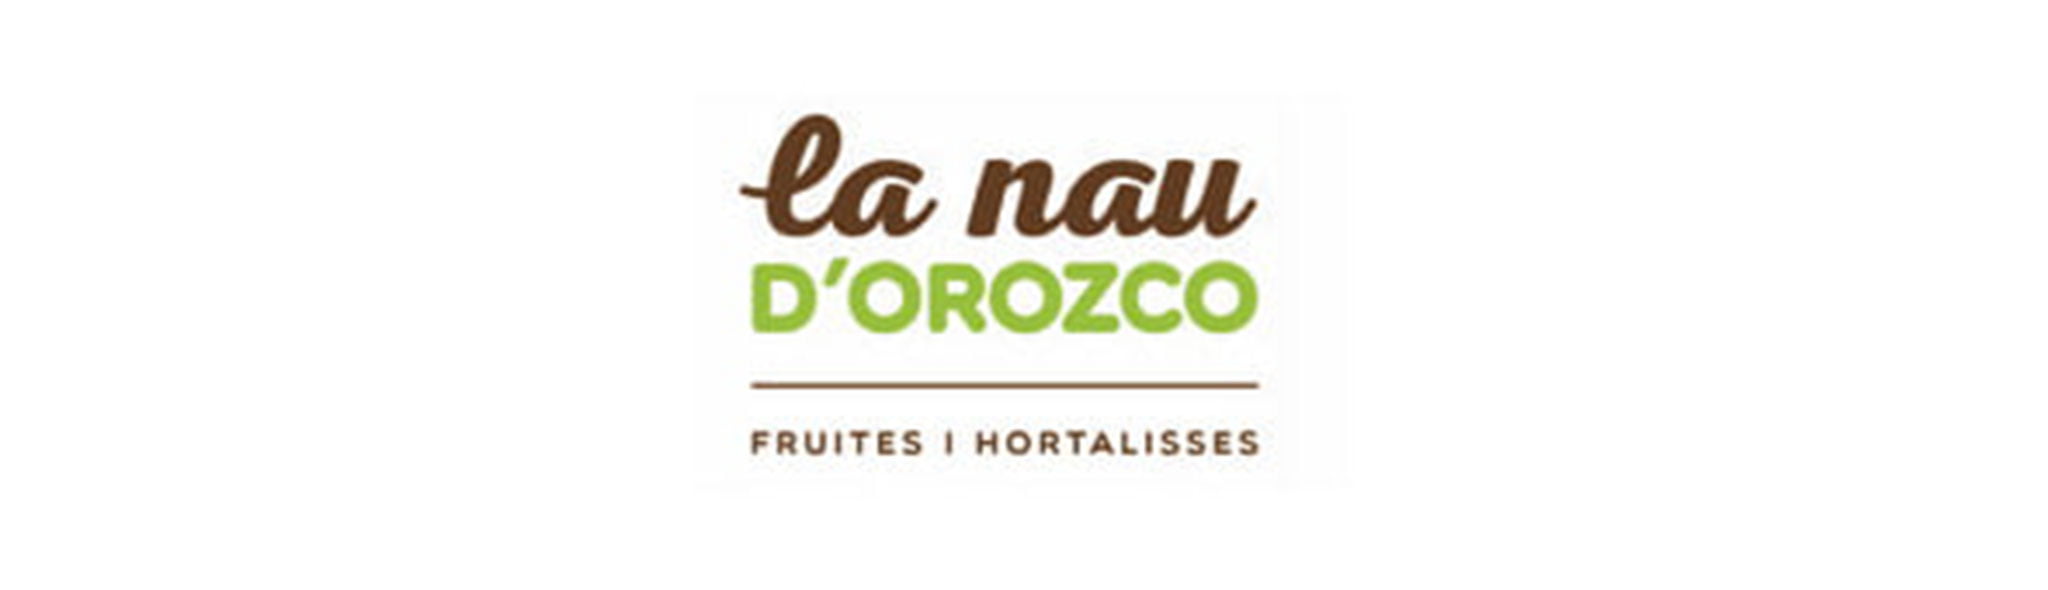 Logotipo de La Nau d’Orozco – Frutas y verduras Orozco